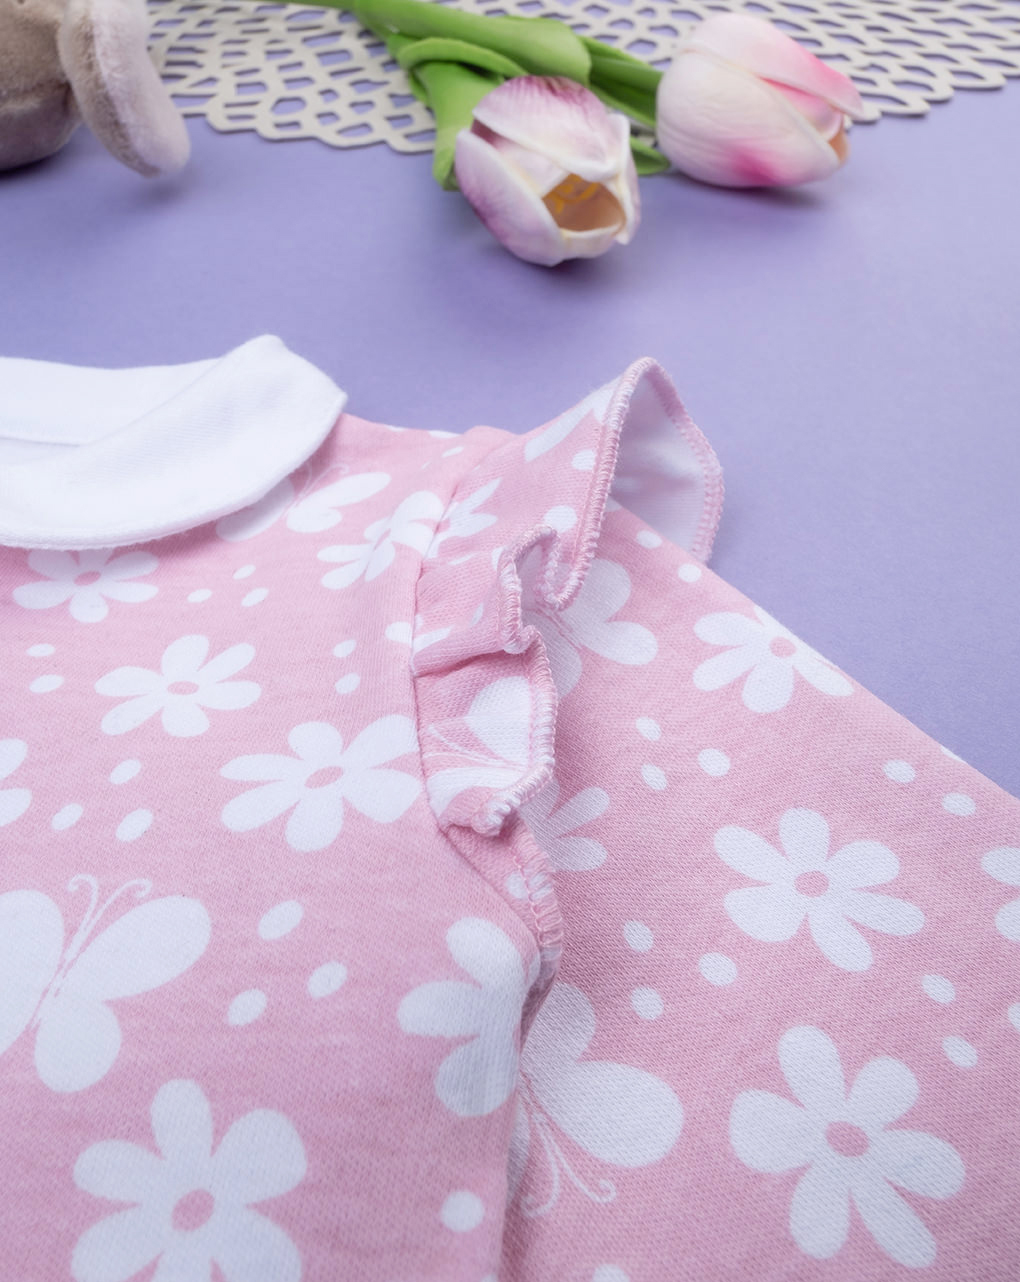 βρεφικό φορμάκι ροζ με λουλούδια και πεταλούδες για κορίτσι - Prénatal